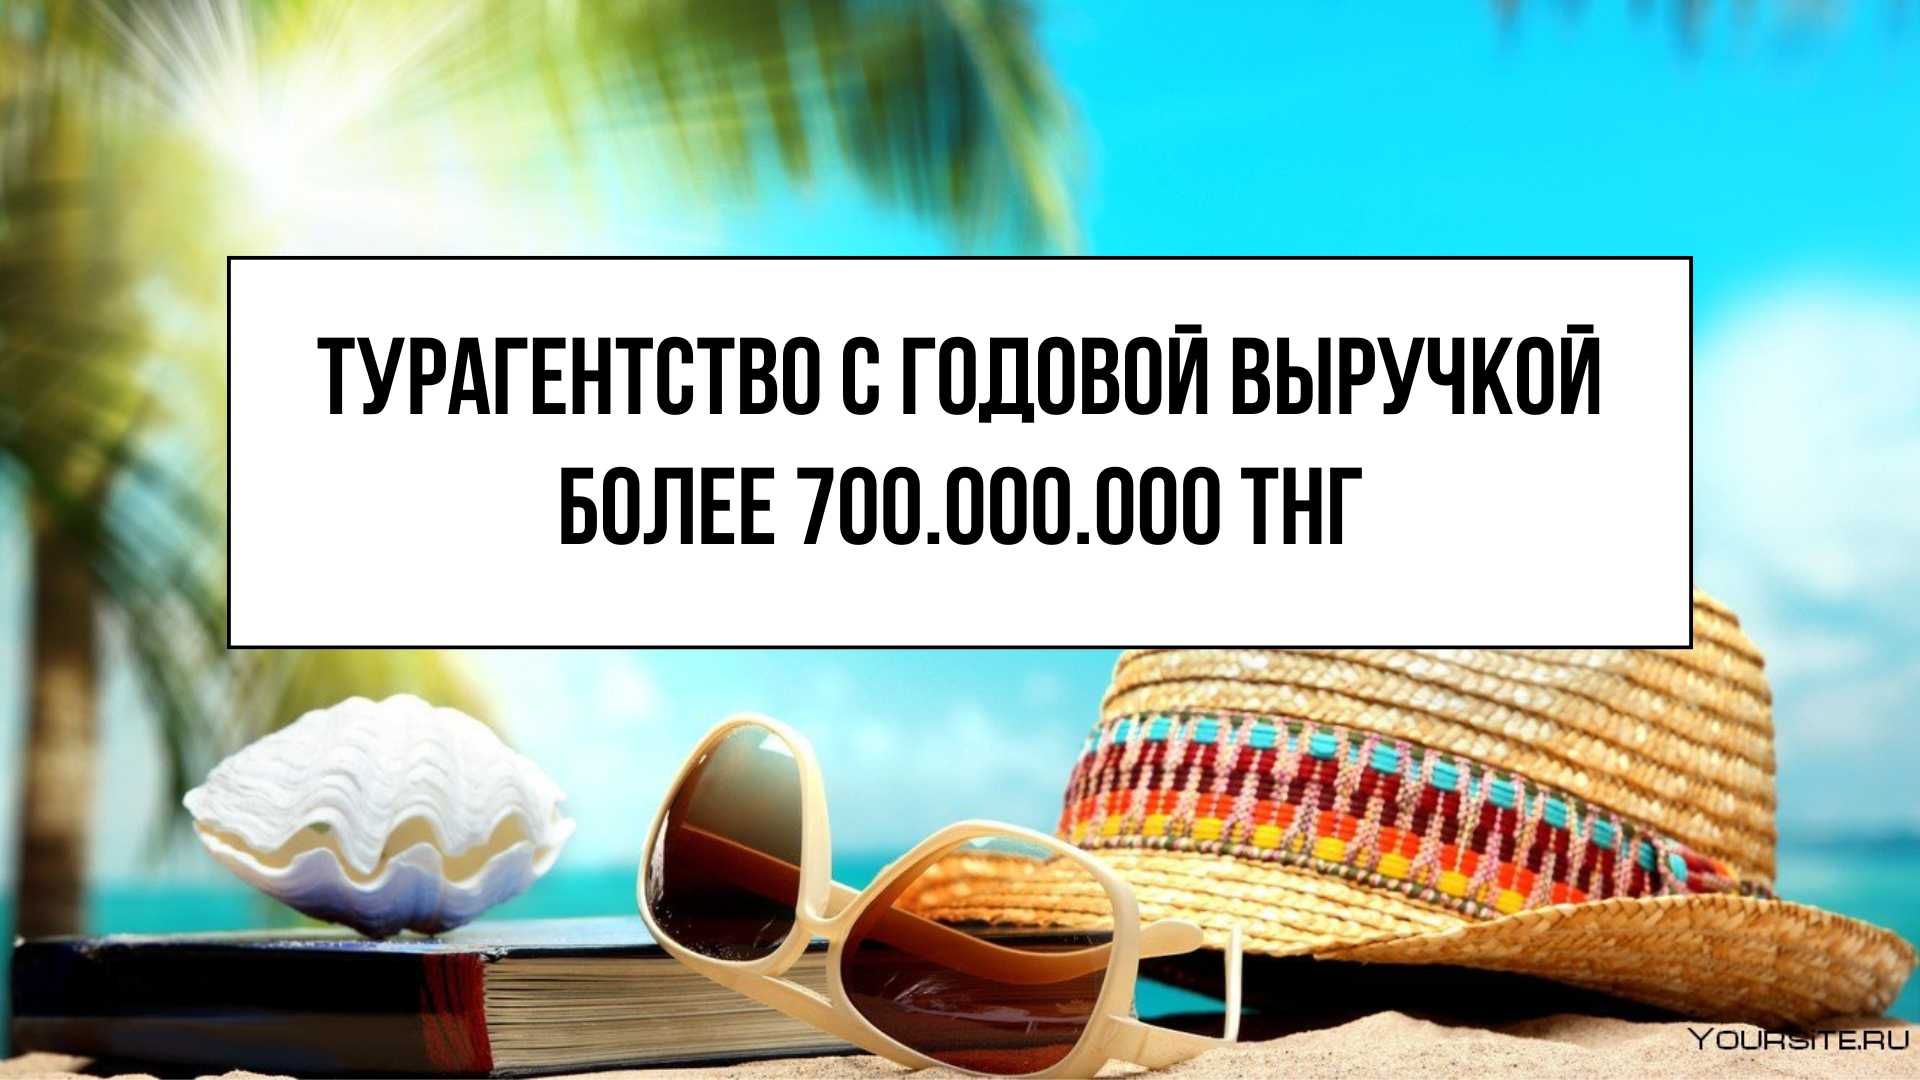 Бизнес с выручкой более 700 млн тнг в год "Турагентство в г. Астана"